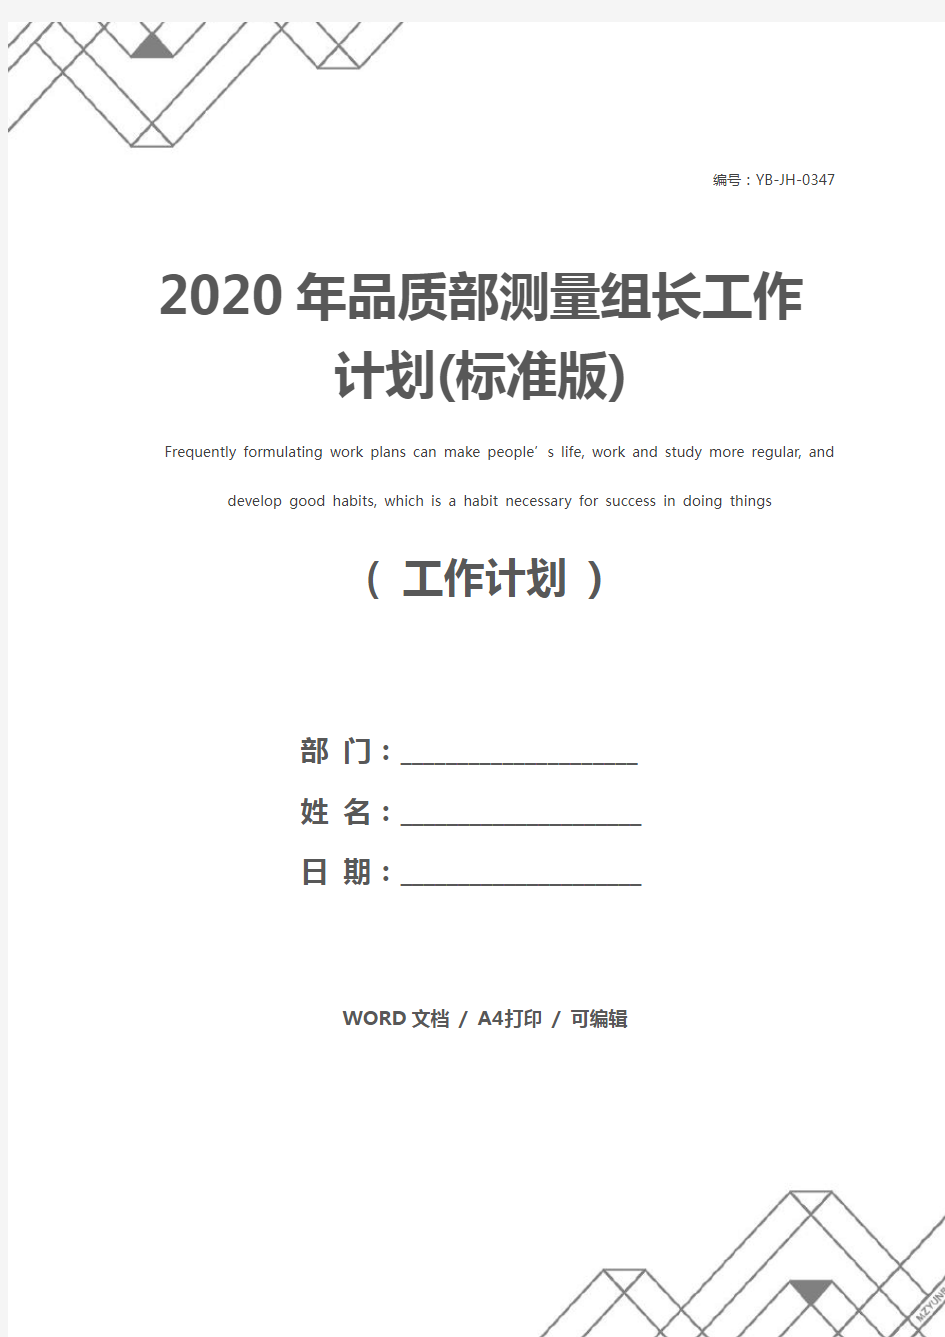 2020年品质部测量组长工作计划(标准版)